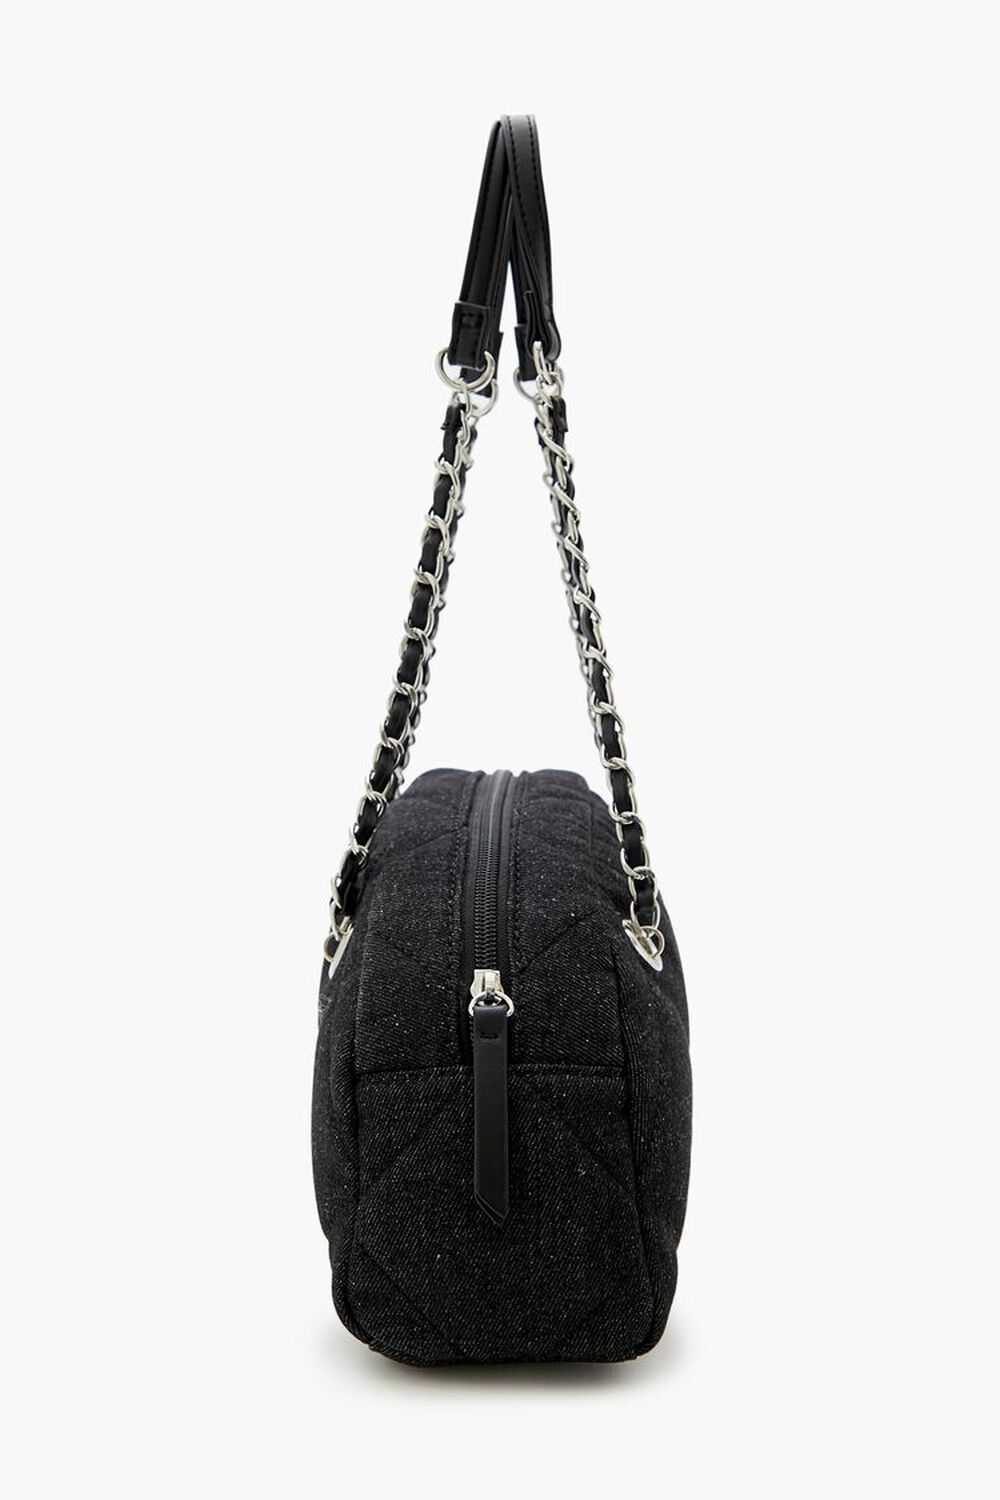 BLACK Quilted Denim Baguette Bag, image 3